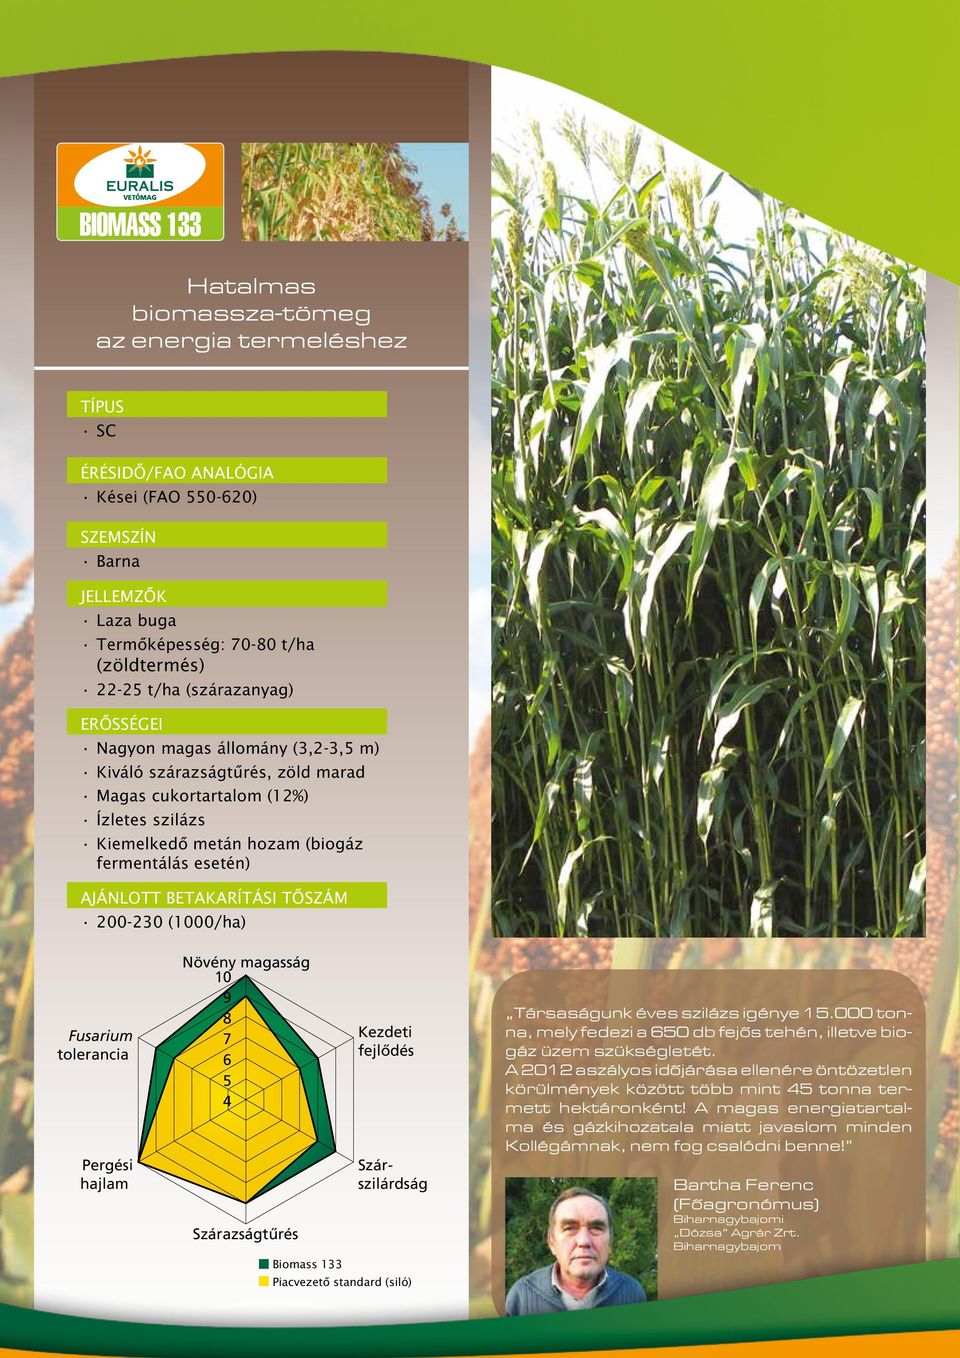 betakarítási tôszám 200-230 (1000/ha) Fusarium tolerancia Pergési hajlam Növény magasság 10 9 8 7 6 5 4 Szárazságtűrés Kezdeti fejlődés Szárszilárdság Biomass 133 Piacvezetô standard (siló)